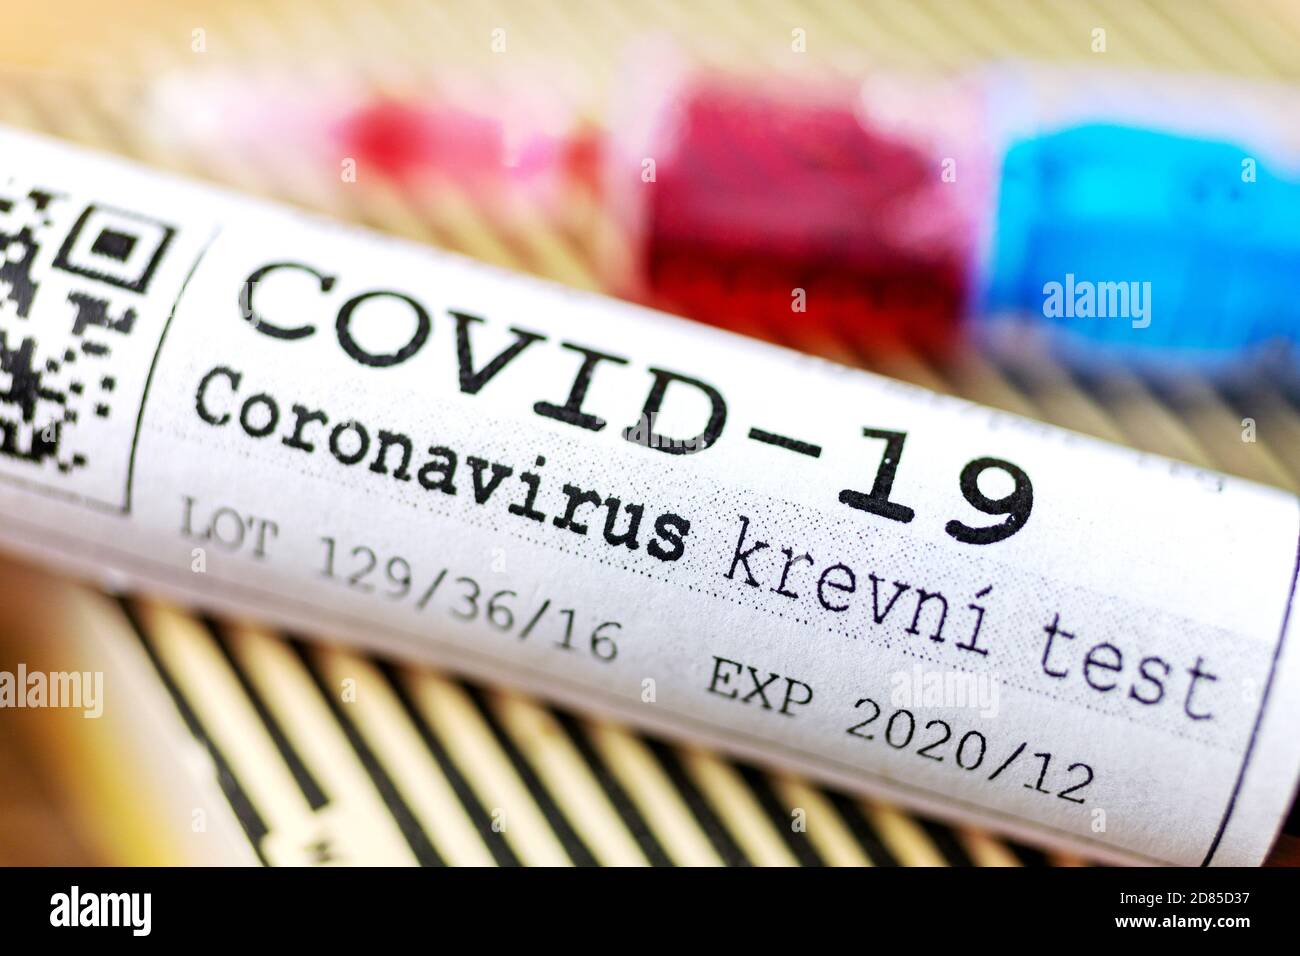 Virus pericoloso del Coronavirus Covid-19 in laboratorio - infezione del virus 2019-nCoV. Rischio pandemico globale dovuto all'epidemia di coronavirus Foto Stock